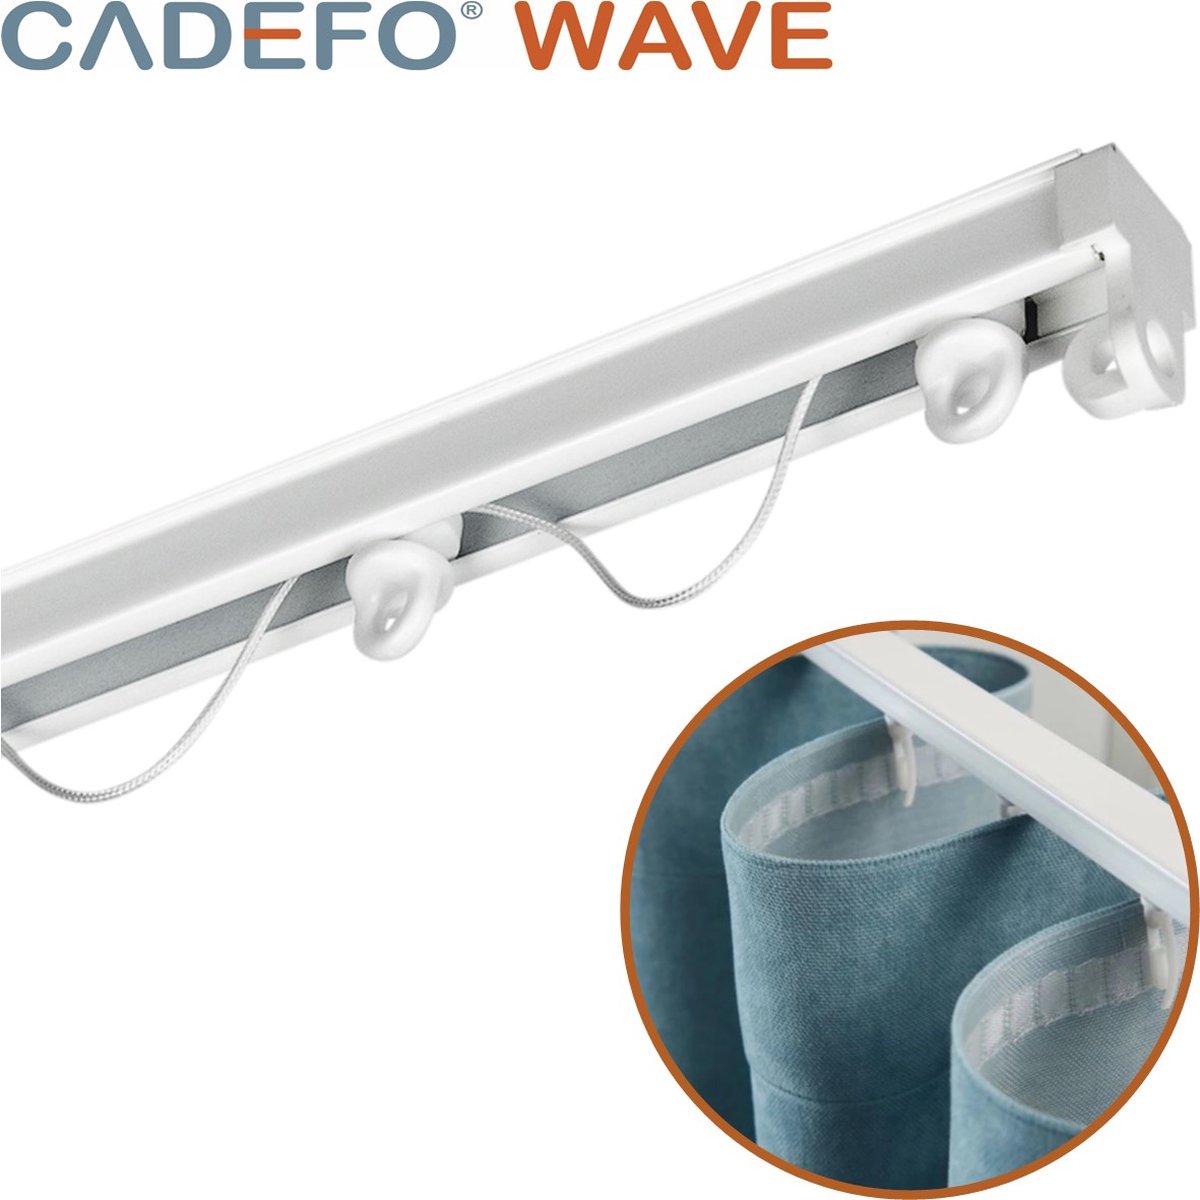 CADEFO WAVE (151 - 200 cm) Gordijnrails - Compleet op maat! - UIT 1 STUK - Leverbaar tot 6 meter - Plafondbevestiging - Lengte 192 cm